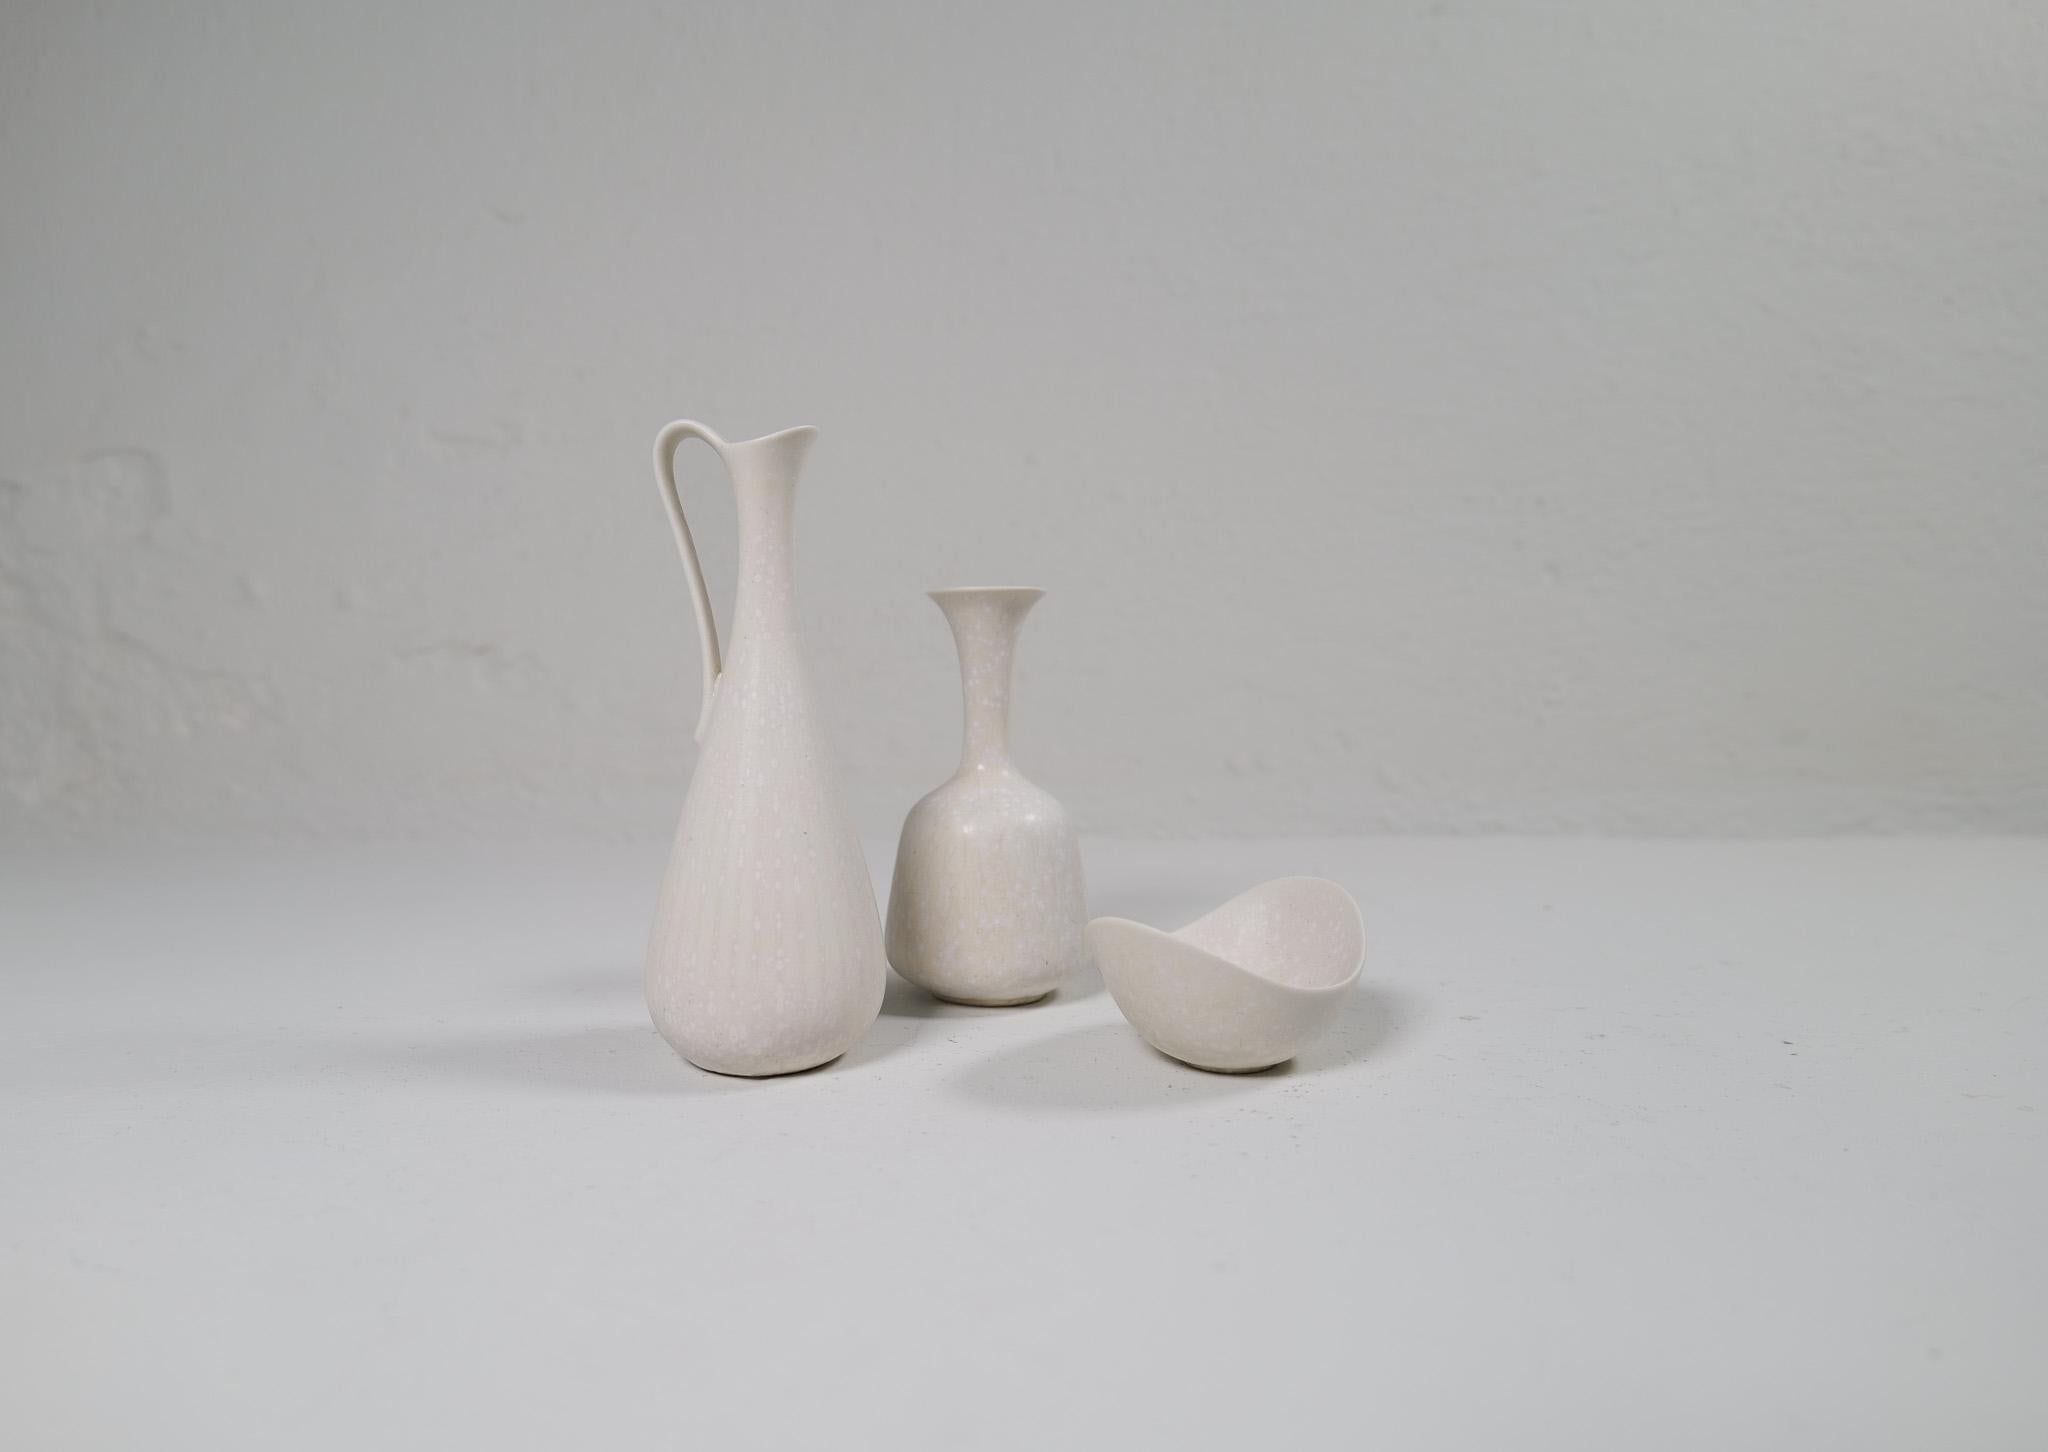 Drei wunderbare Stücke von Rörstrand und seinem Hersteller, dem Designer Gunnar Nylund. Hergestellt in Schweden um die Mitte des Jahrhunderts. Außergewöhnliche glasierte Vasen mit wunderschönen Rundungen. Dieses Dreier-Set ist selten zu bekommen.